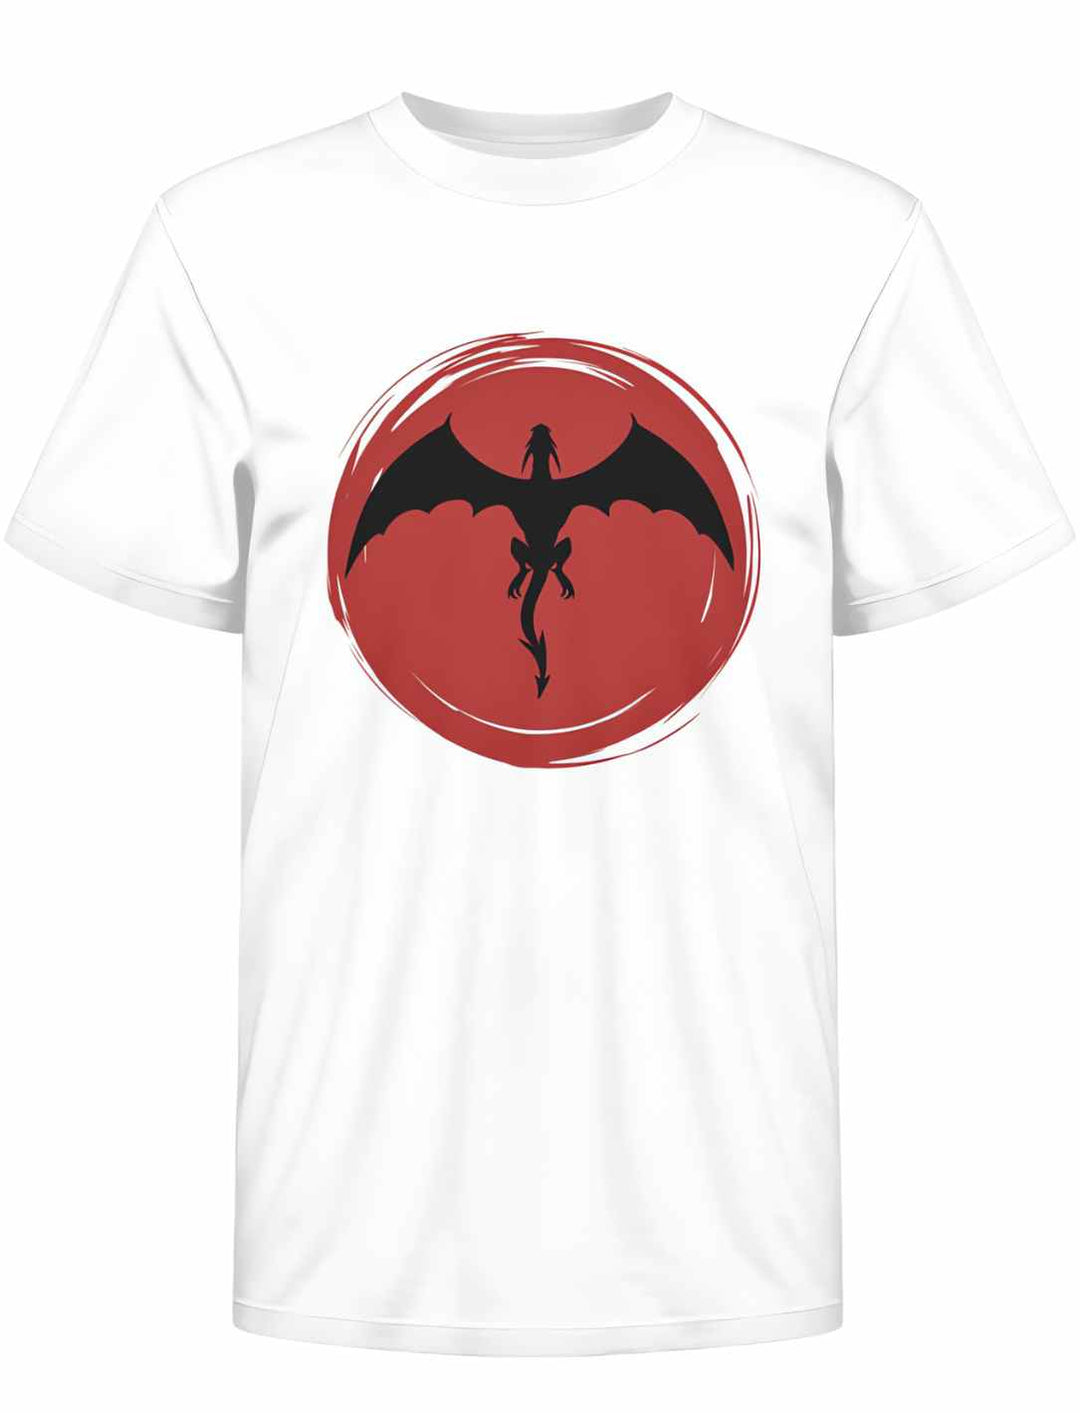 Weißes 'Saga of the Dragon' Bio-Kinder T-Shirt, flach ausgelegt, ideal für junge Entdecker, um im Partnerlook mit ihren Eltern die Legenden zum Leben zu erwecken.